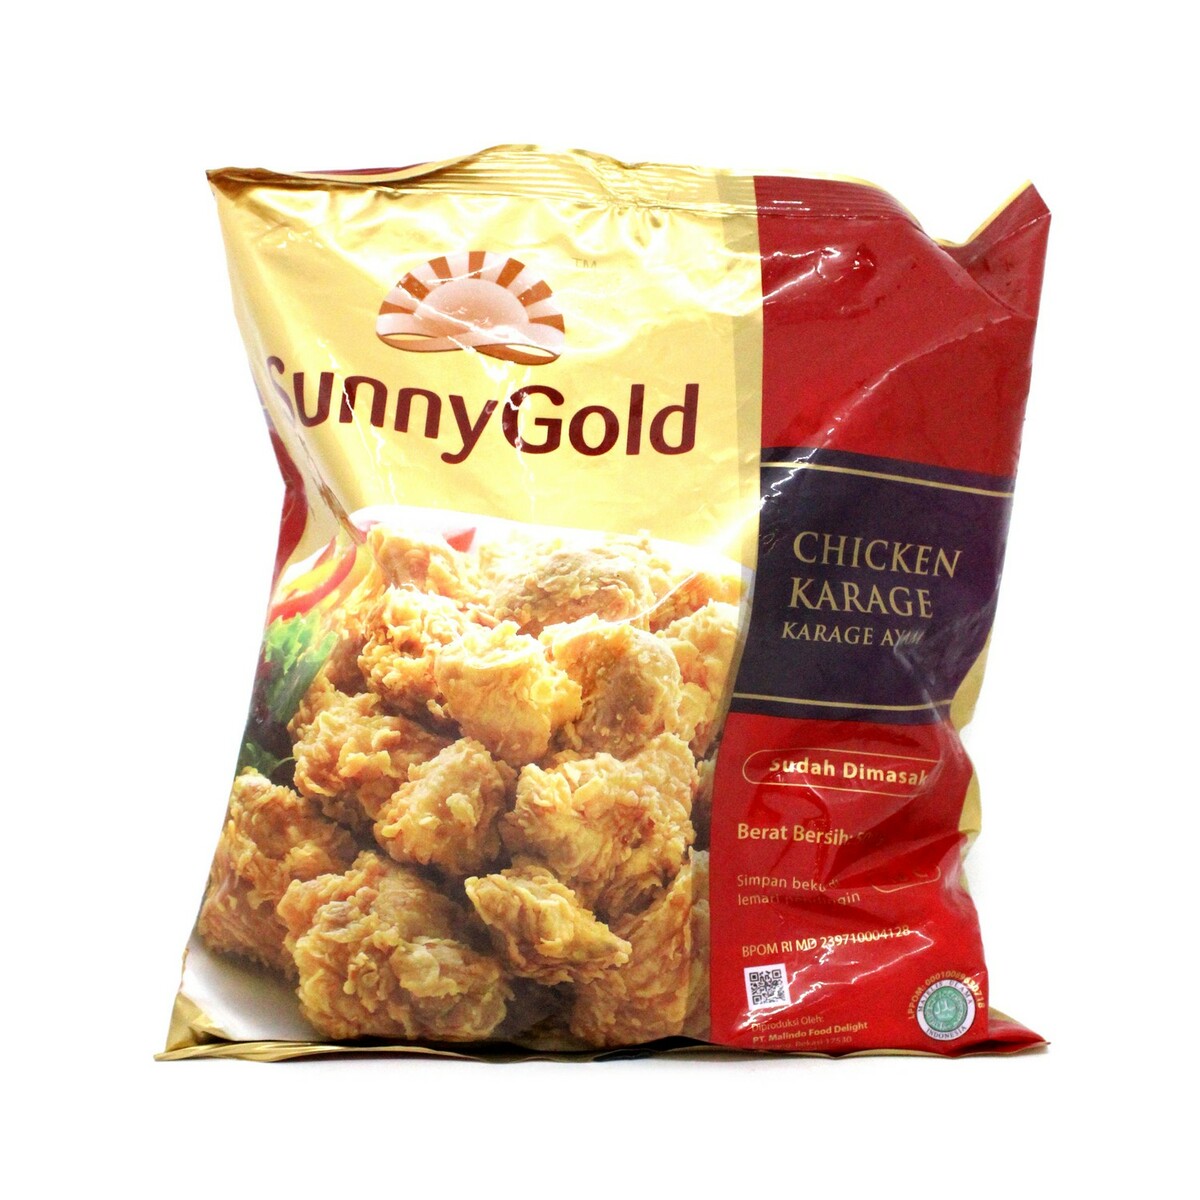 Sunny Gold Karage Ayam 500g Nuggets Lulu Indonesia